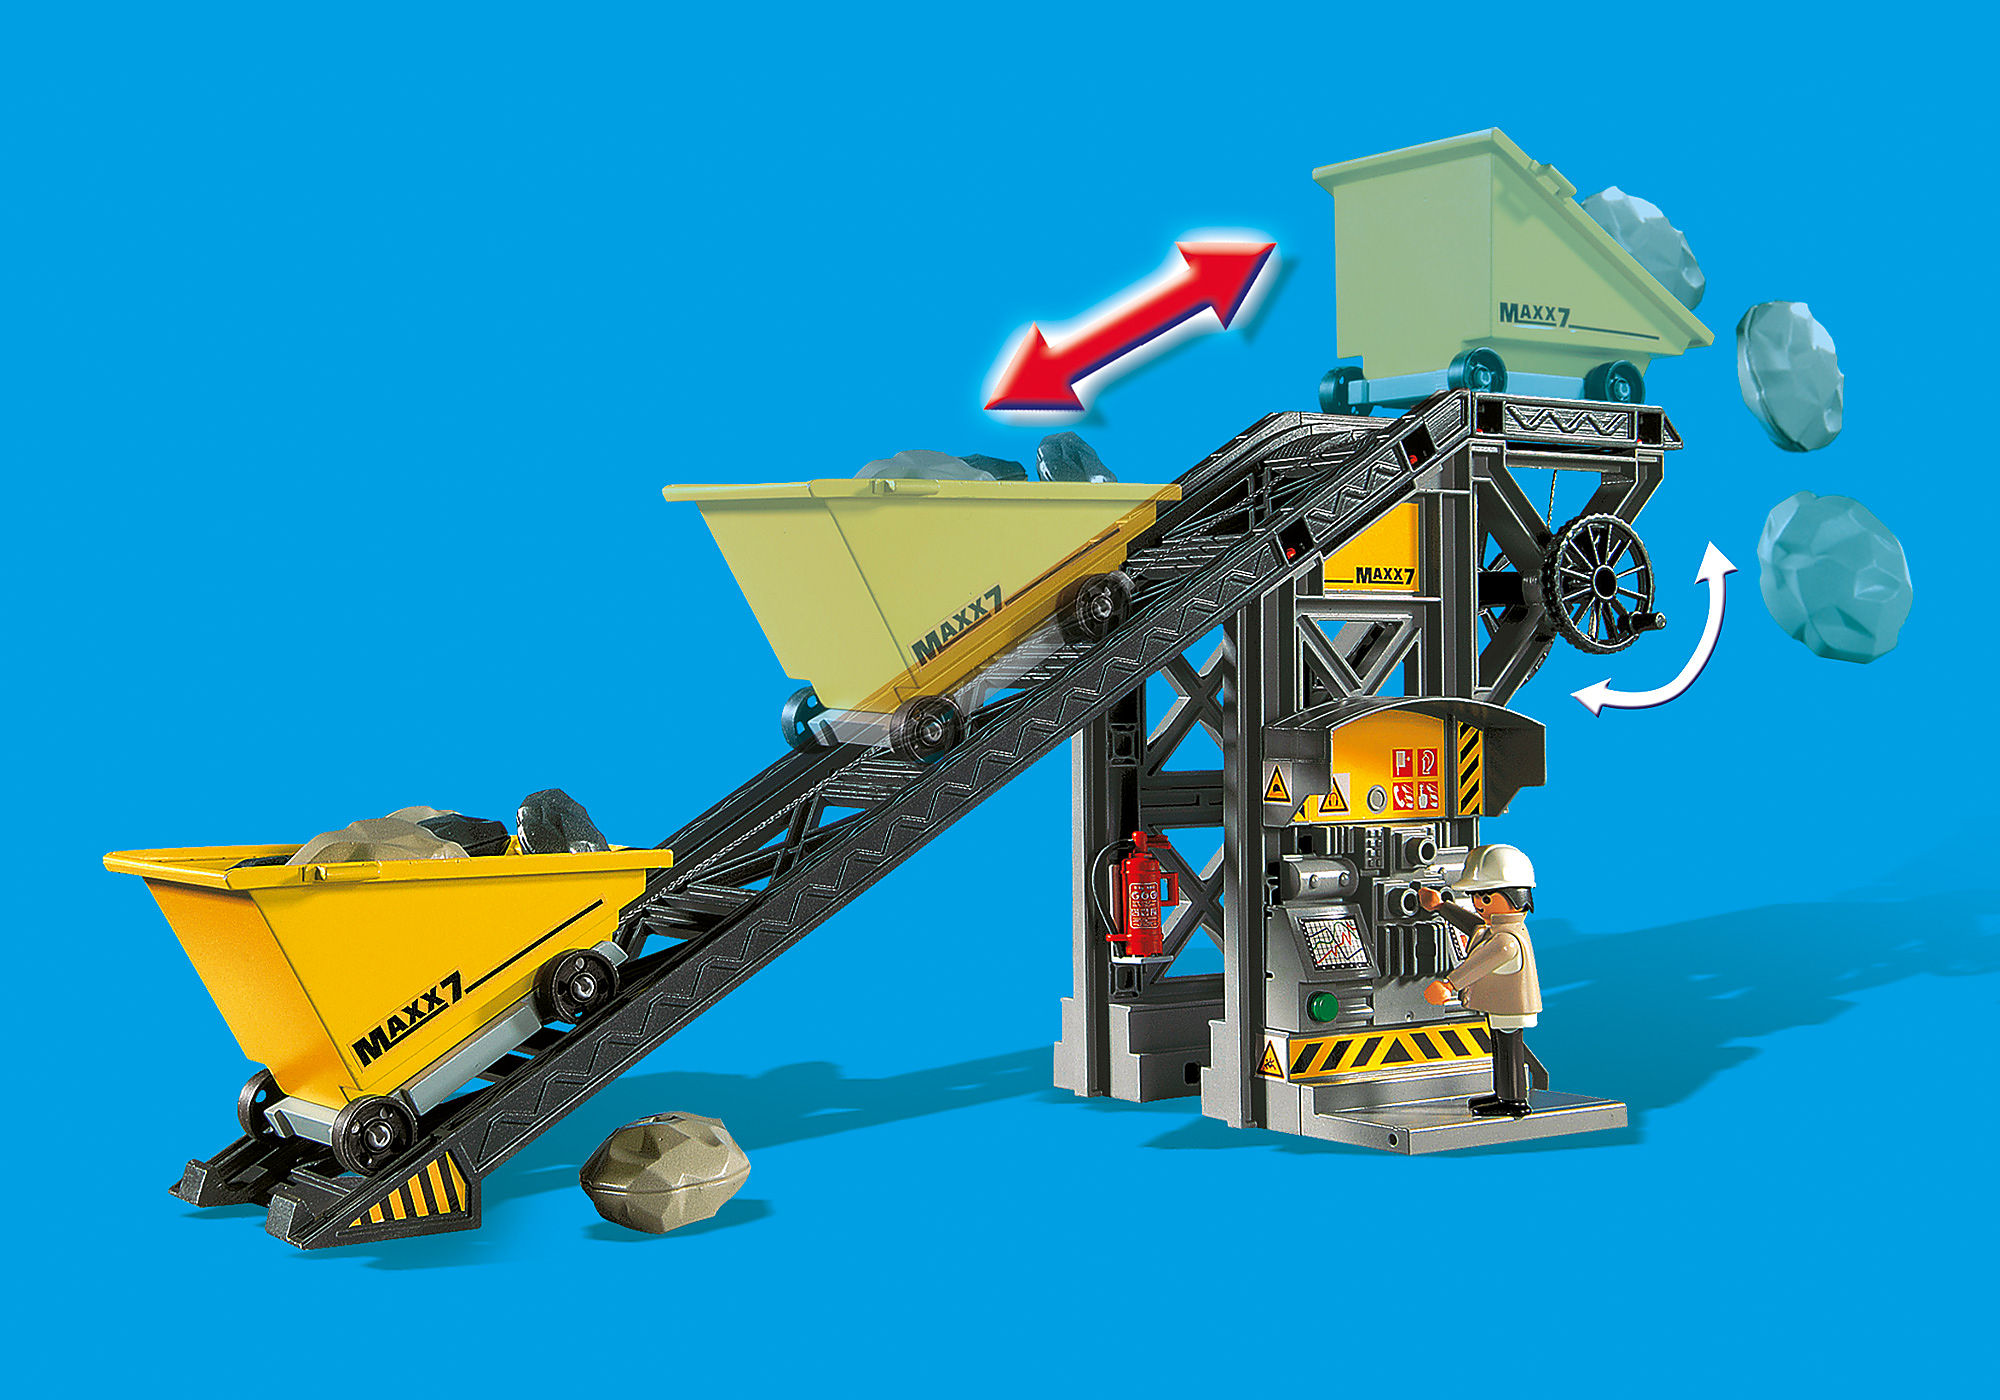 Conveyor with Mini Excavator - 4041